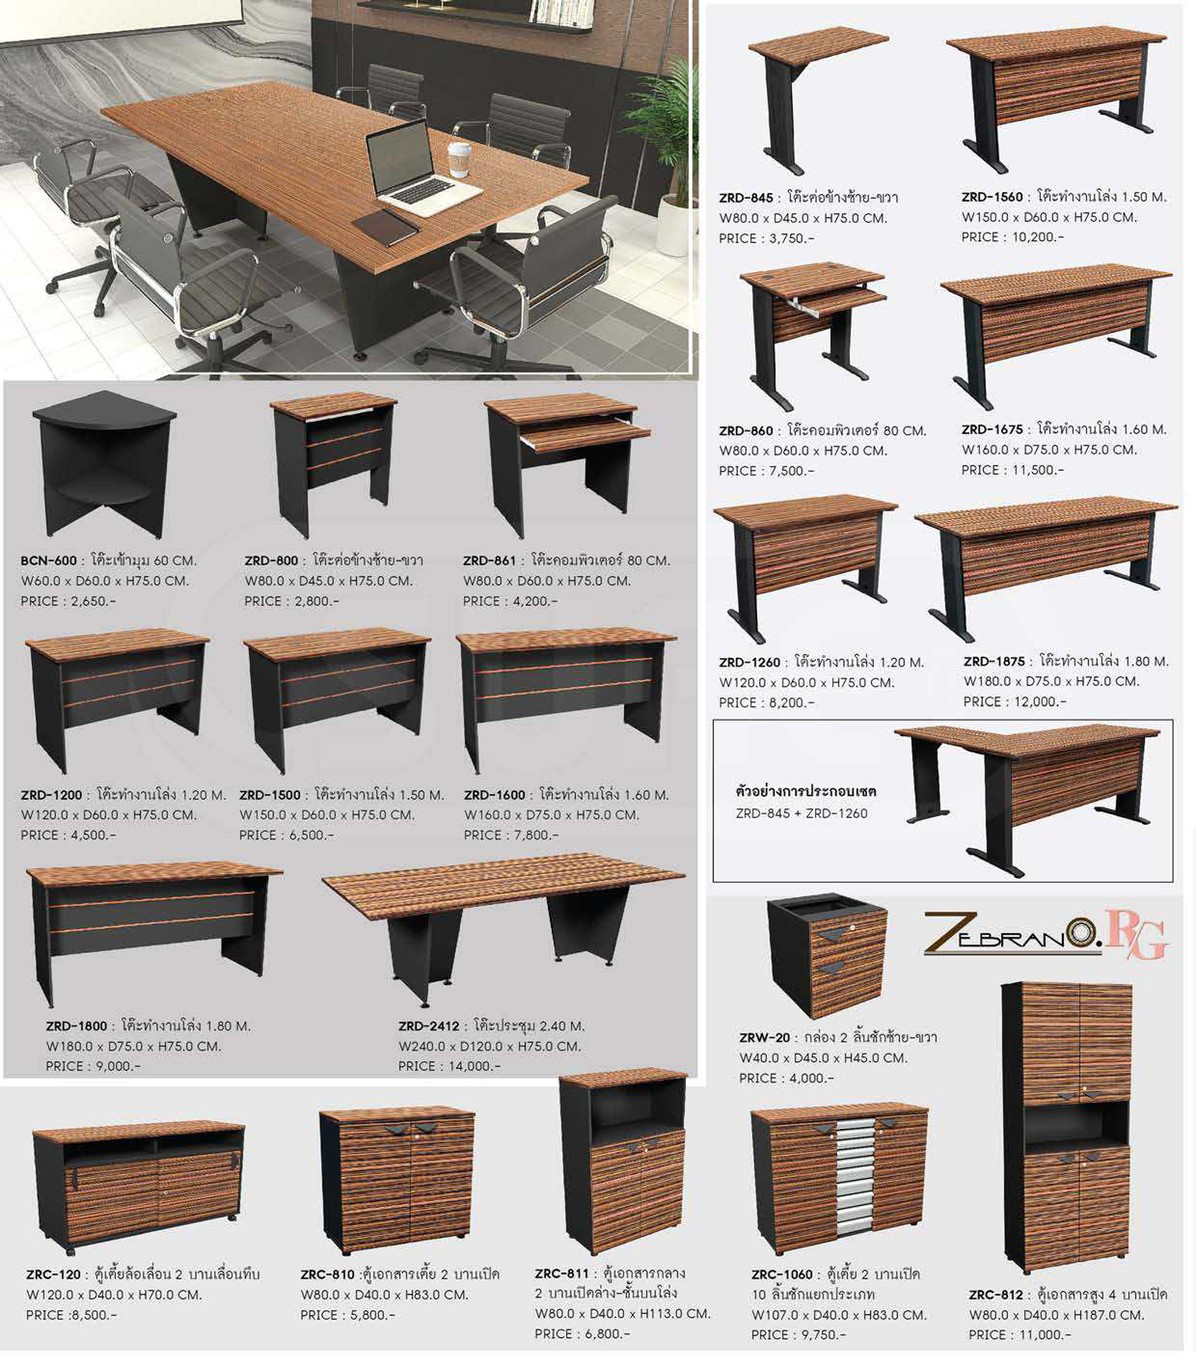 13054::ZRD-1500::โต๊ะทำงานโล่ง ขนาด ก1500xล600xส750 มม. ชัวร์ โต๊ะสำนักงานเมลามิน